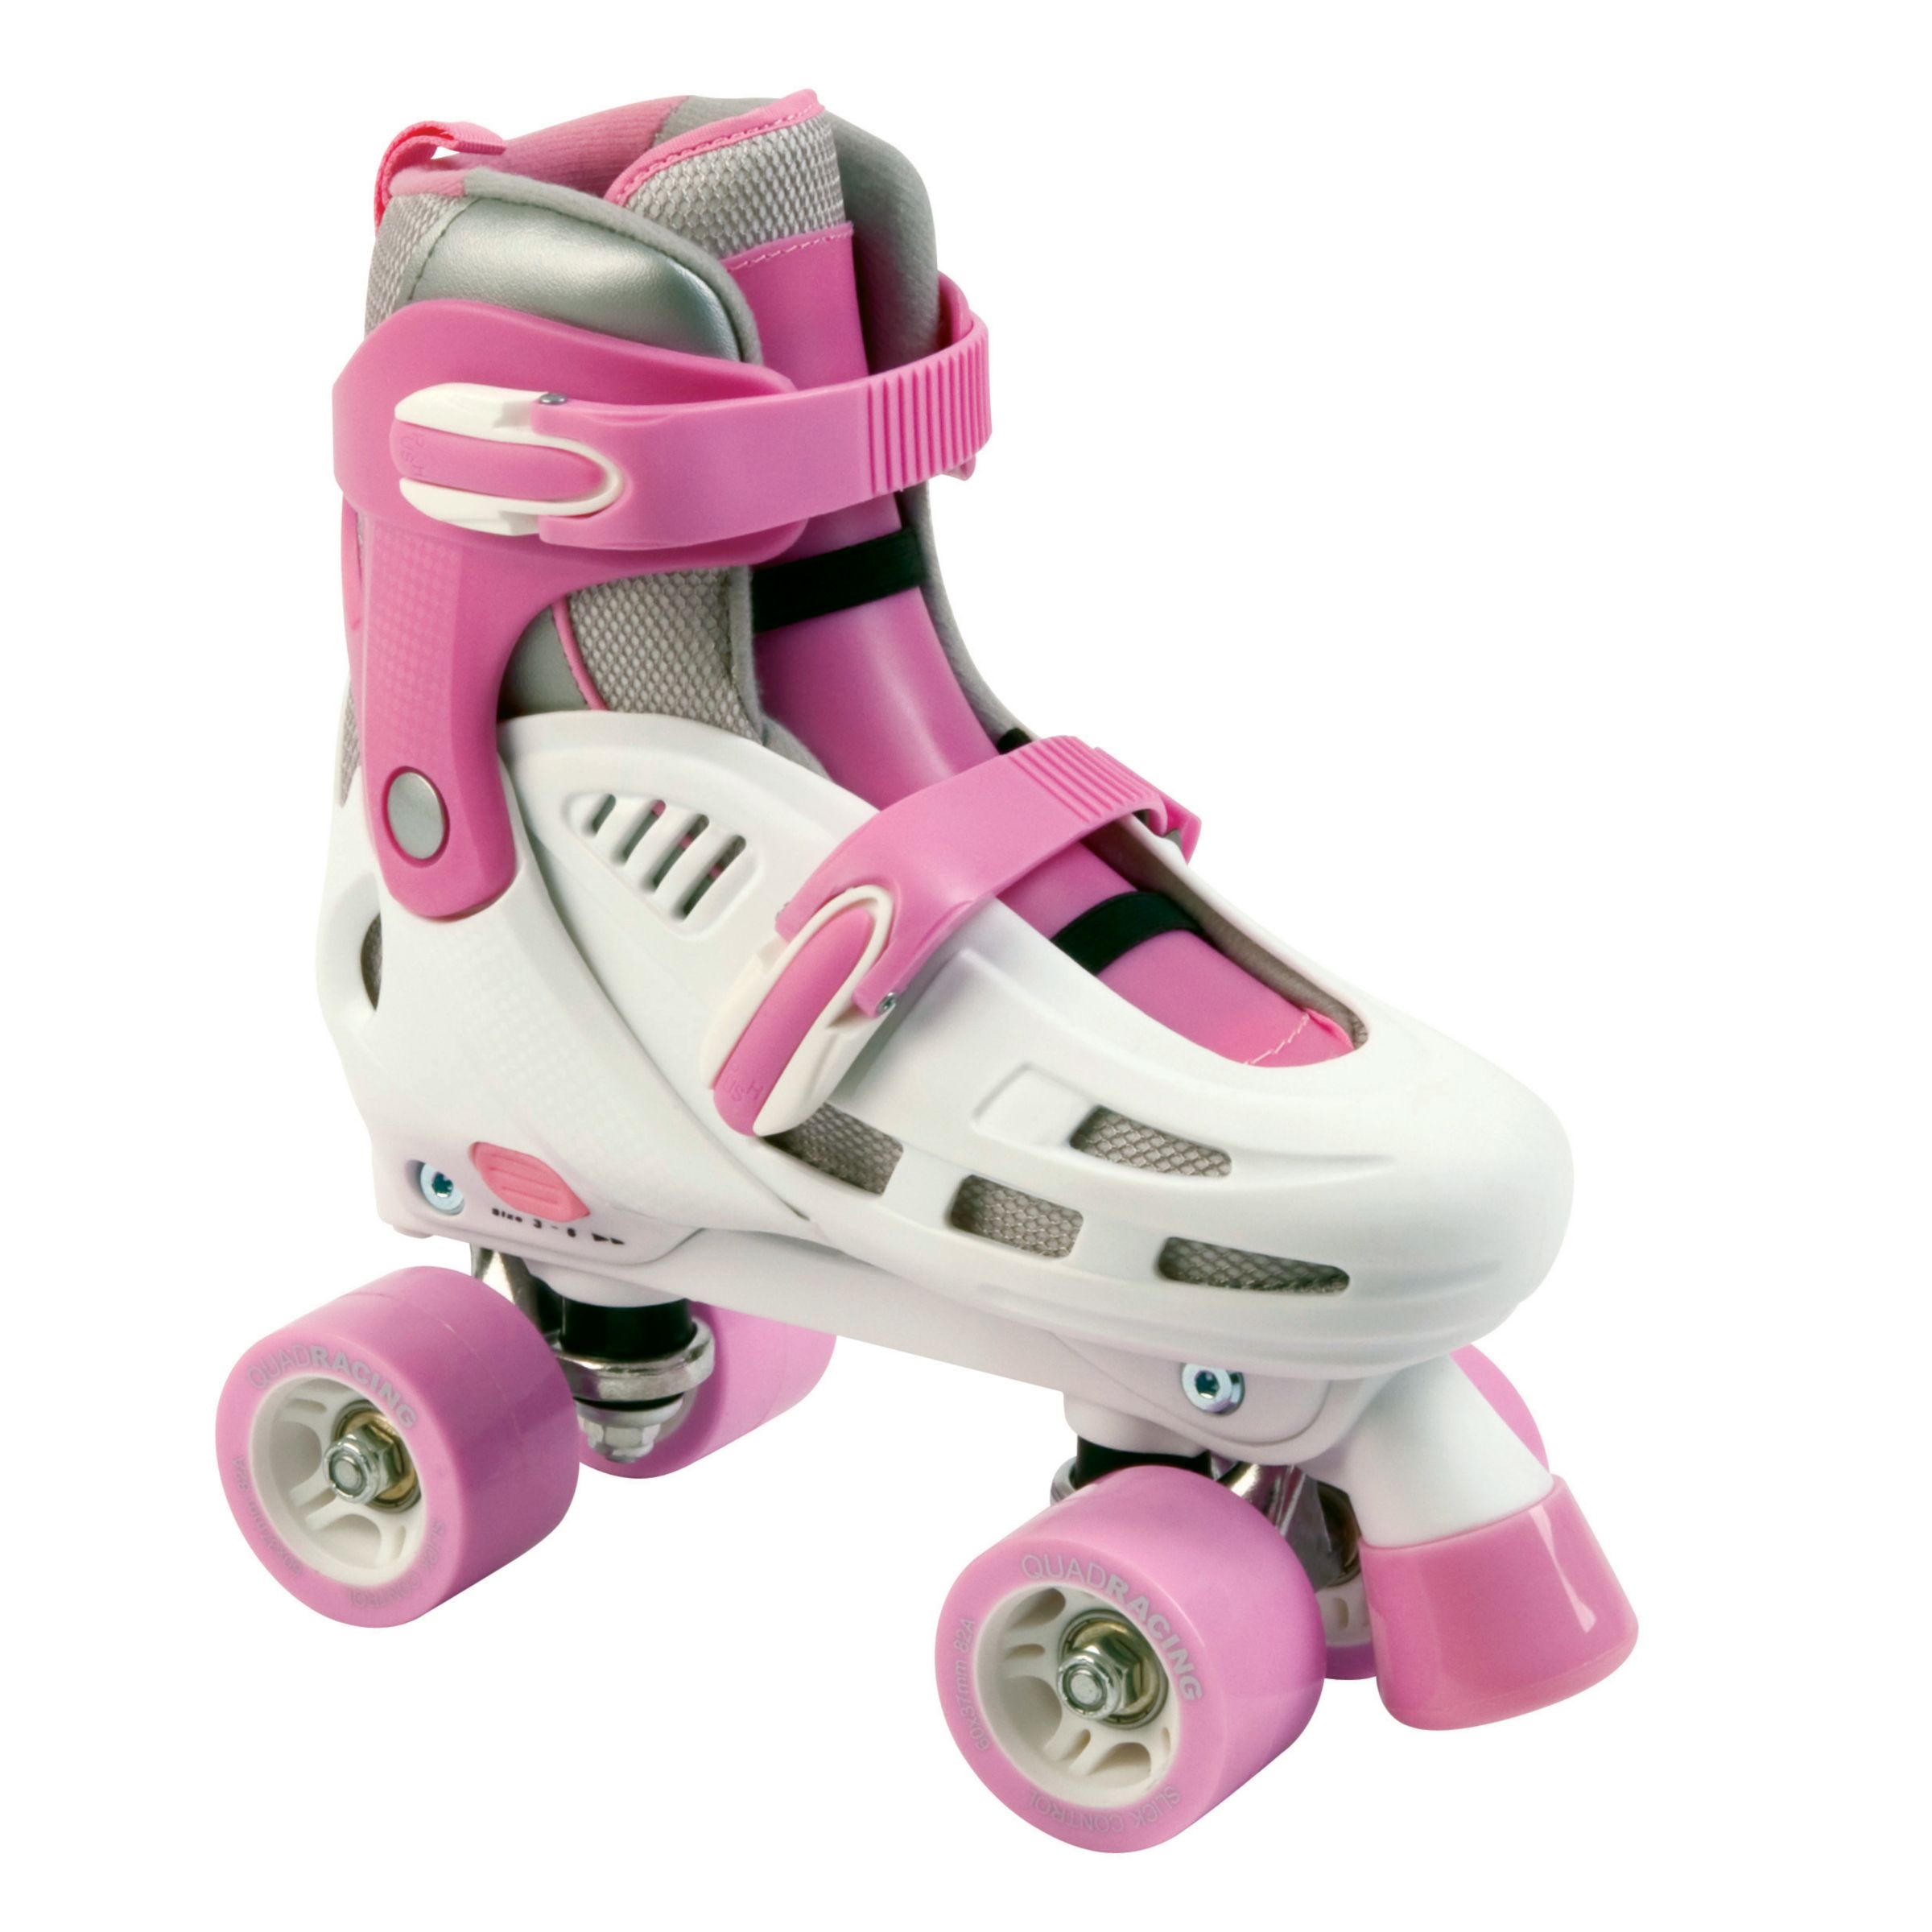 Stateside Storm Racing Adjustable Roller Skates,